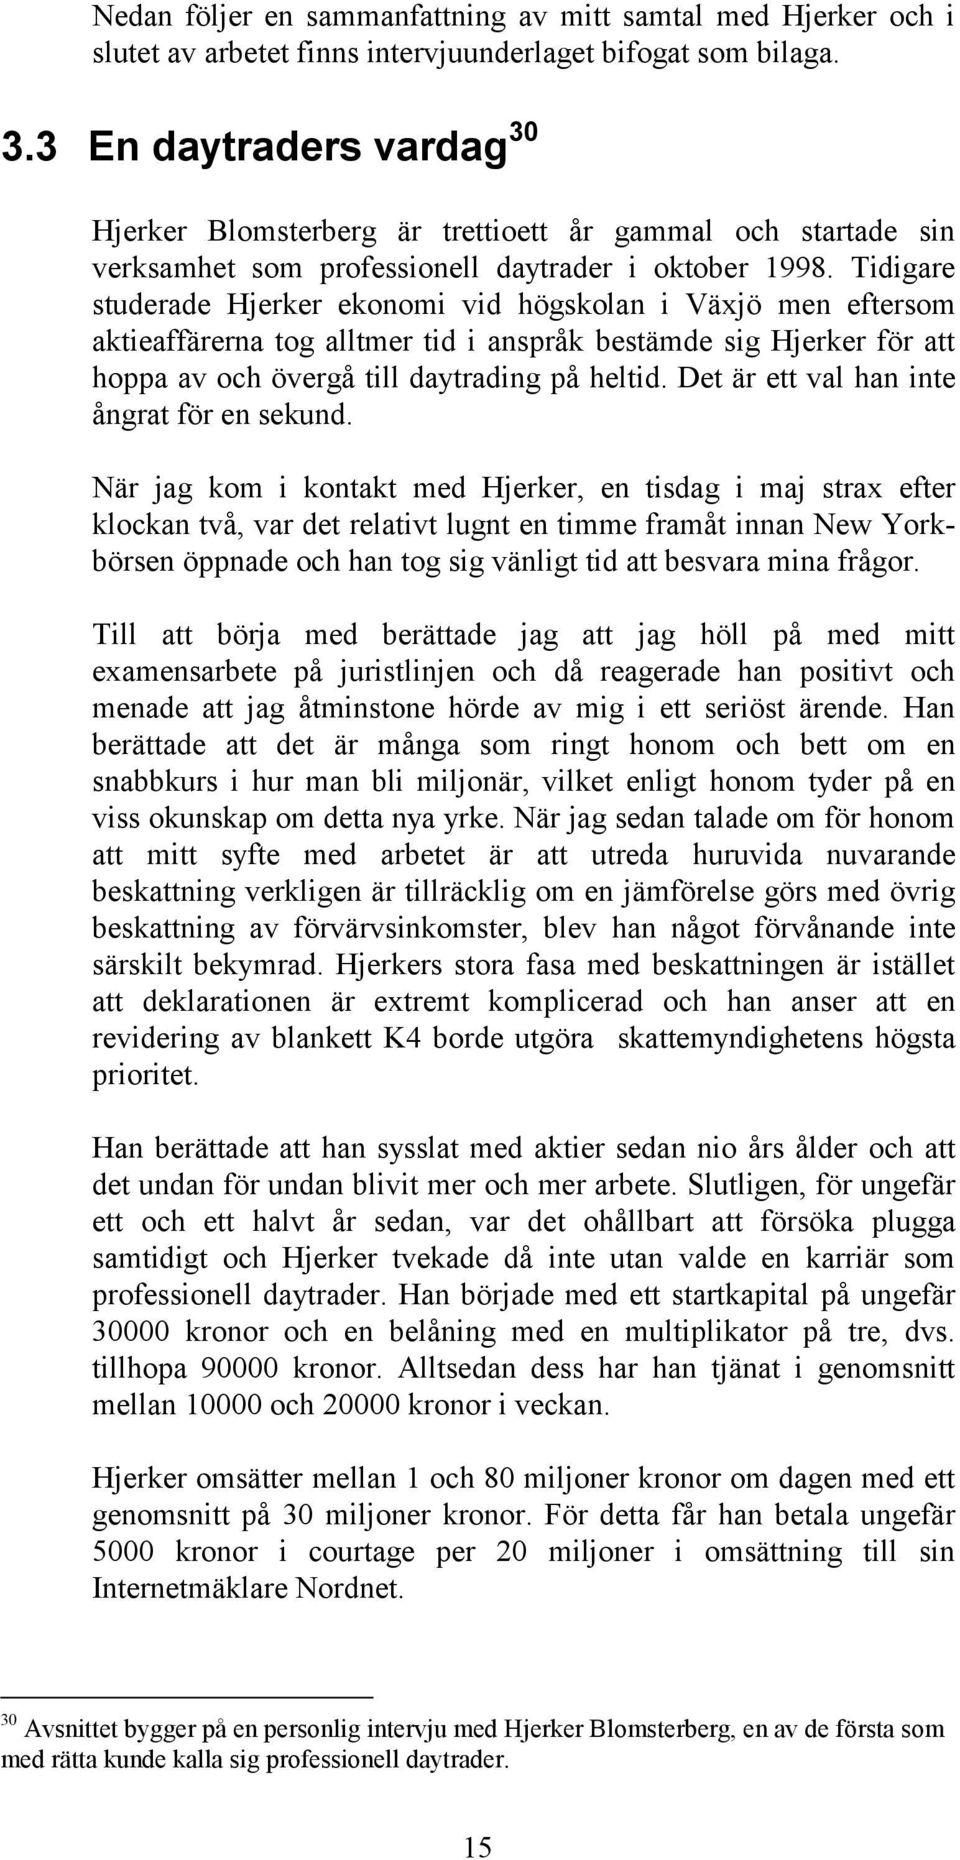 Tidigare studerade Hjerker ekonomi vid högskolan i Växjö men eftersom aktieaffärerna tog alltmer tid i anspråk bestämde sig Hjerker för att hoppa av och övergå till daytrading på heltid.